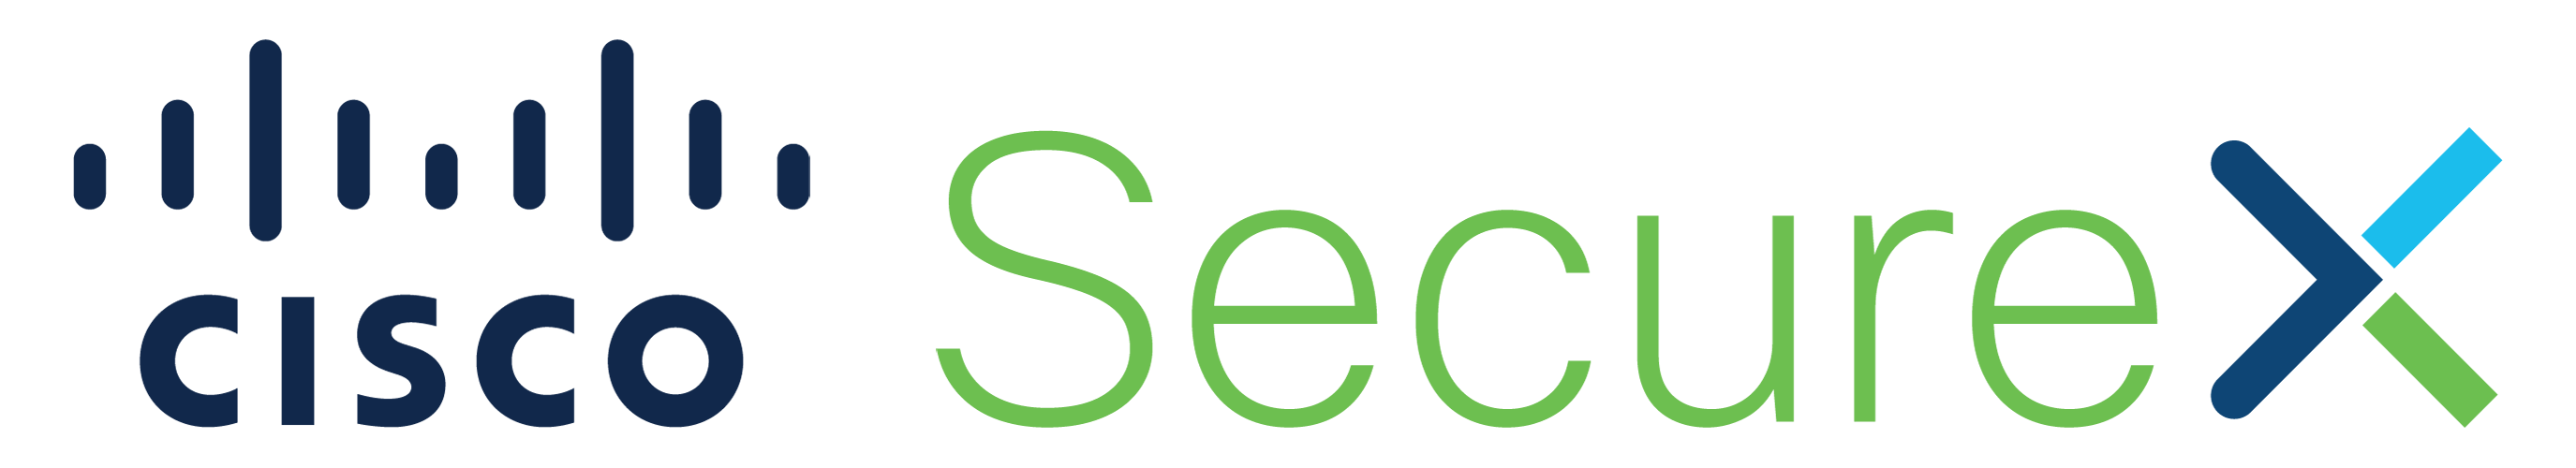 Cisco-SecureX-logo